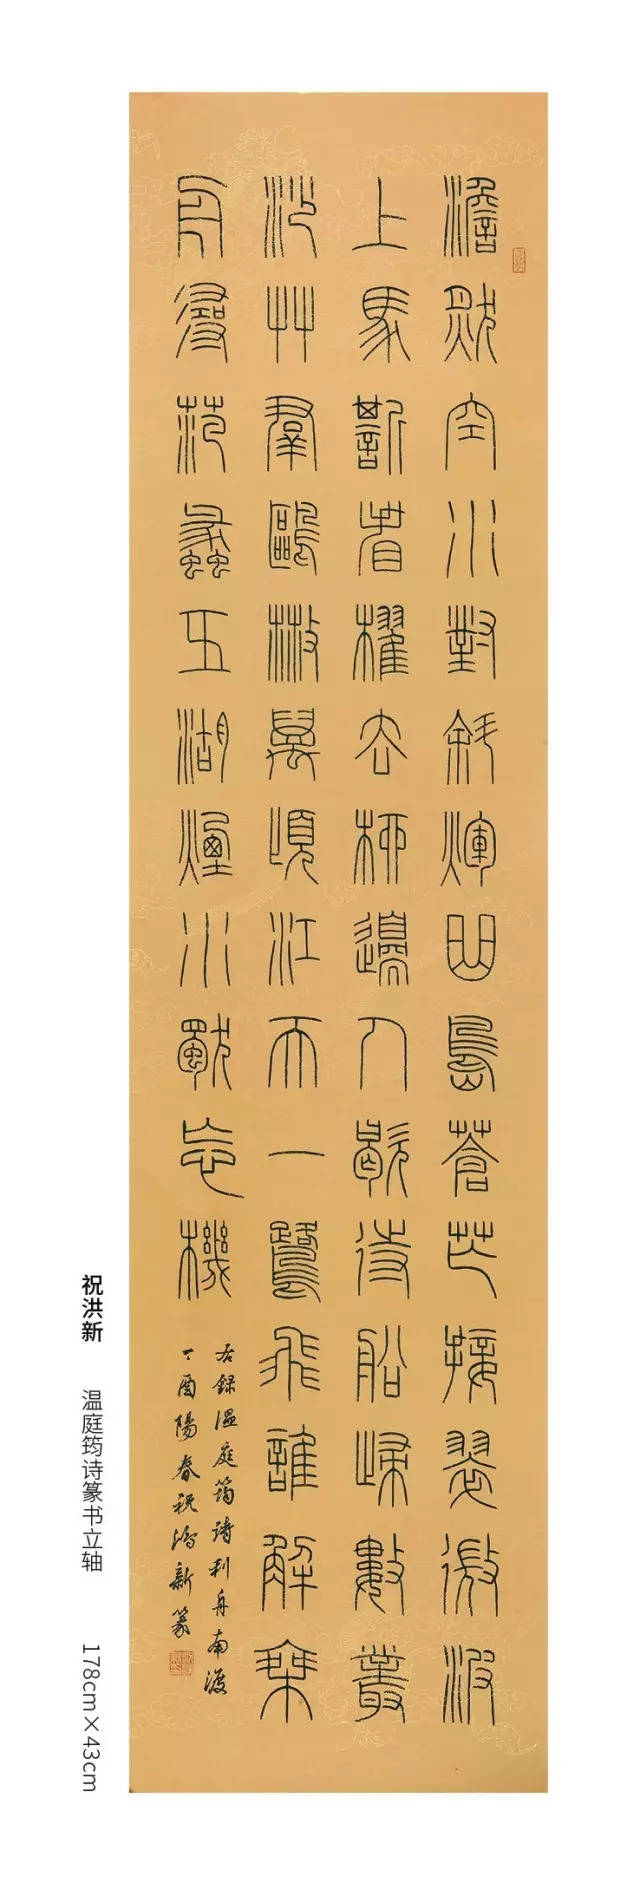 中国当代篆书优秀作品展(共97件作品照片)